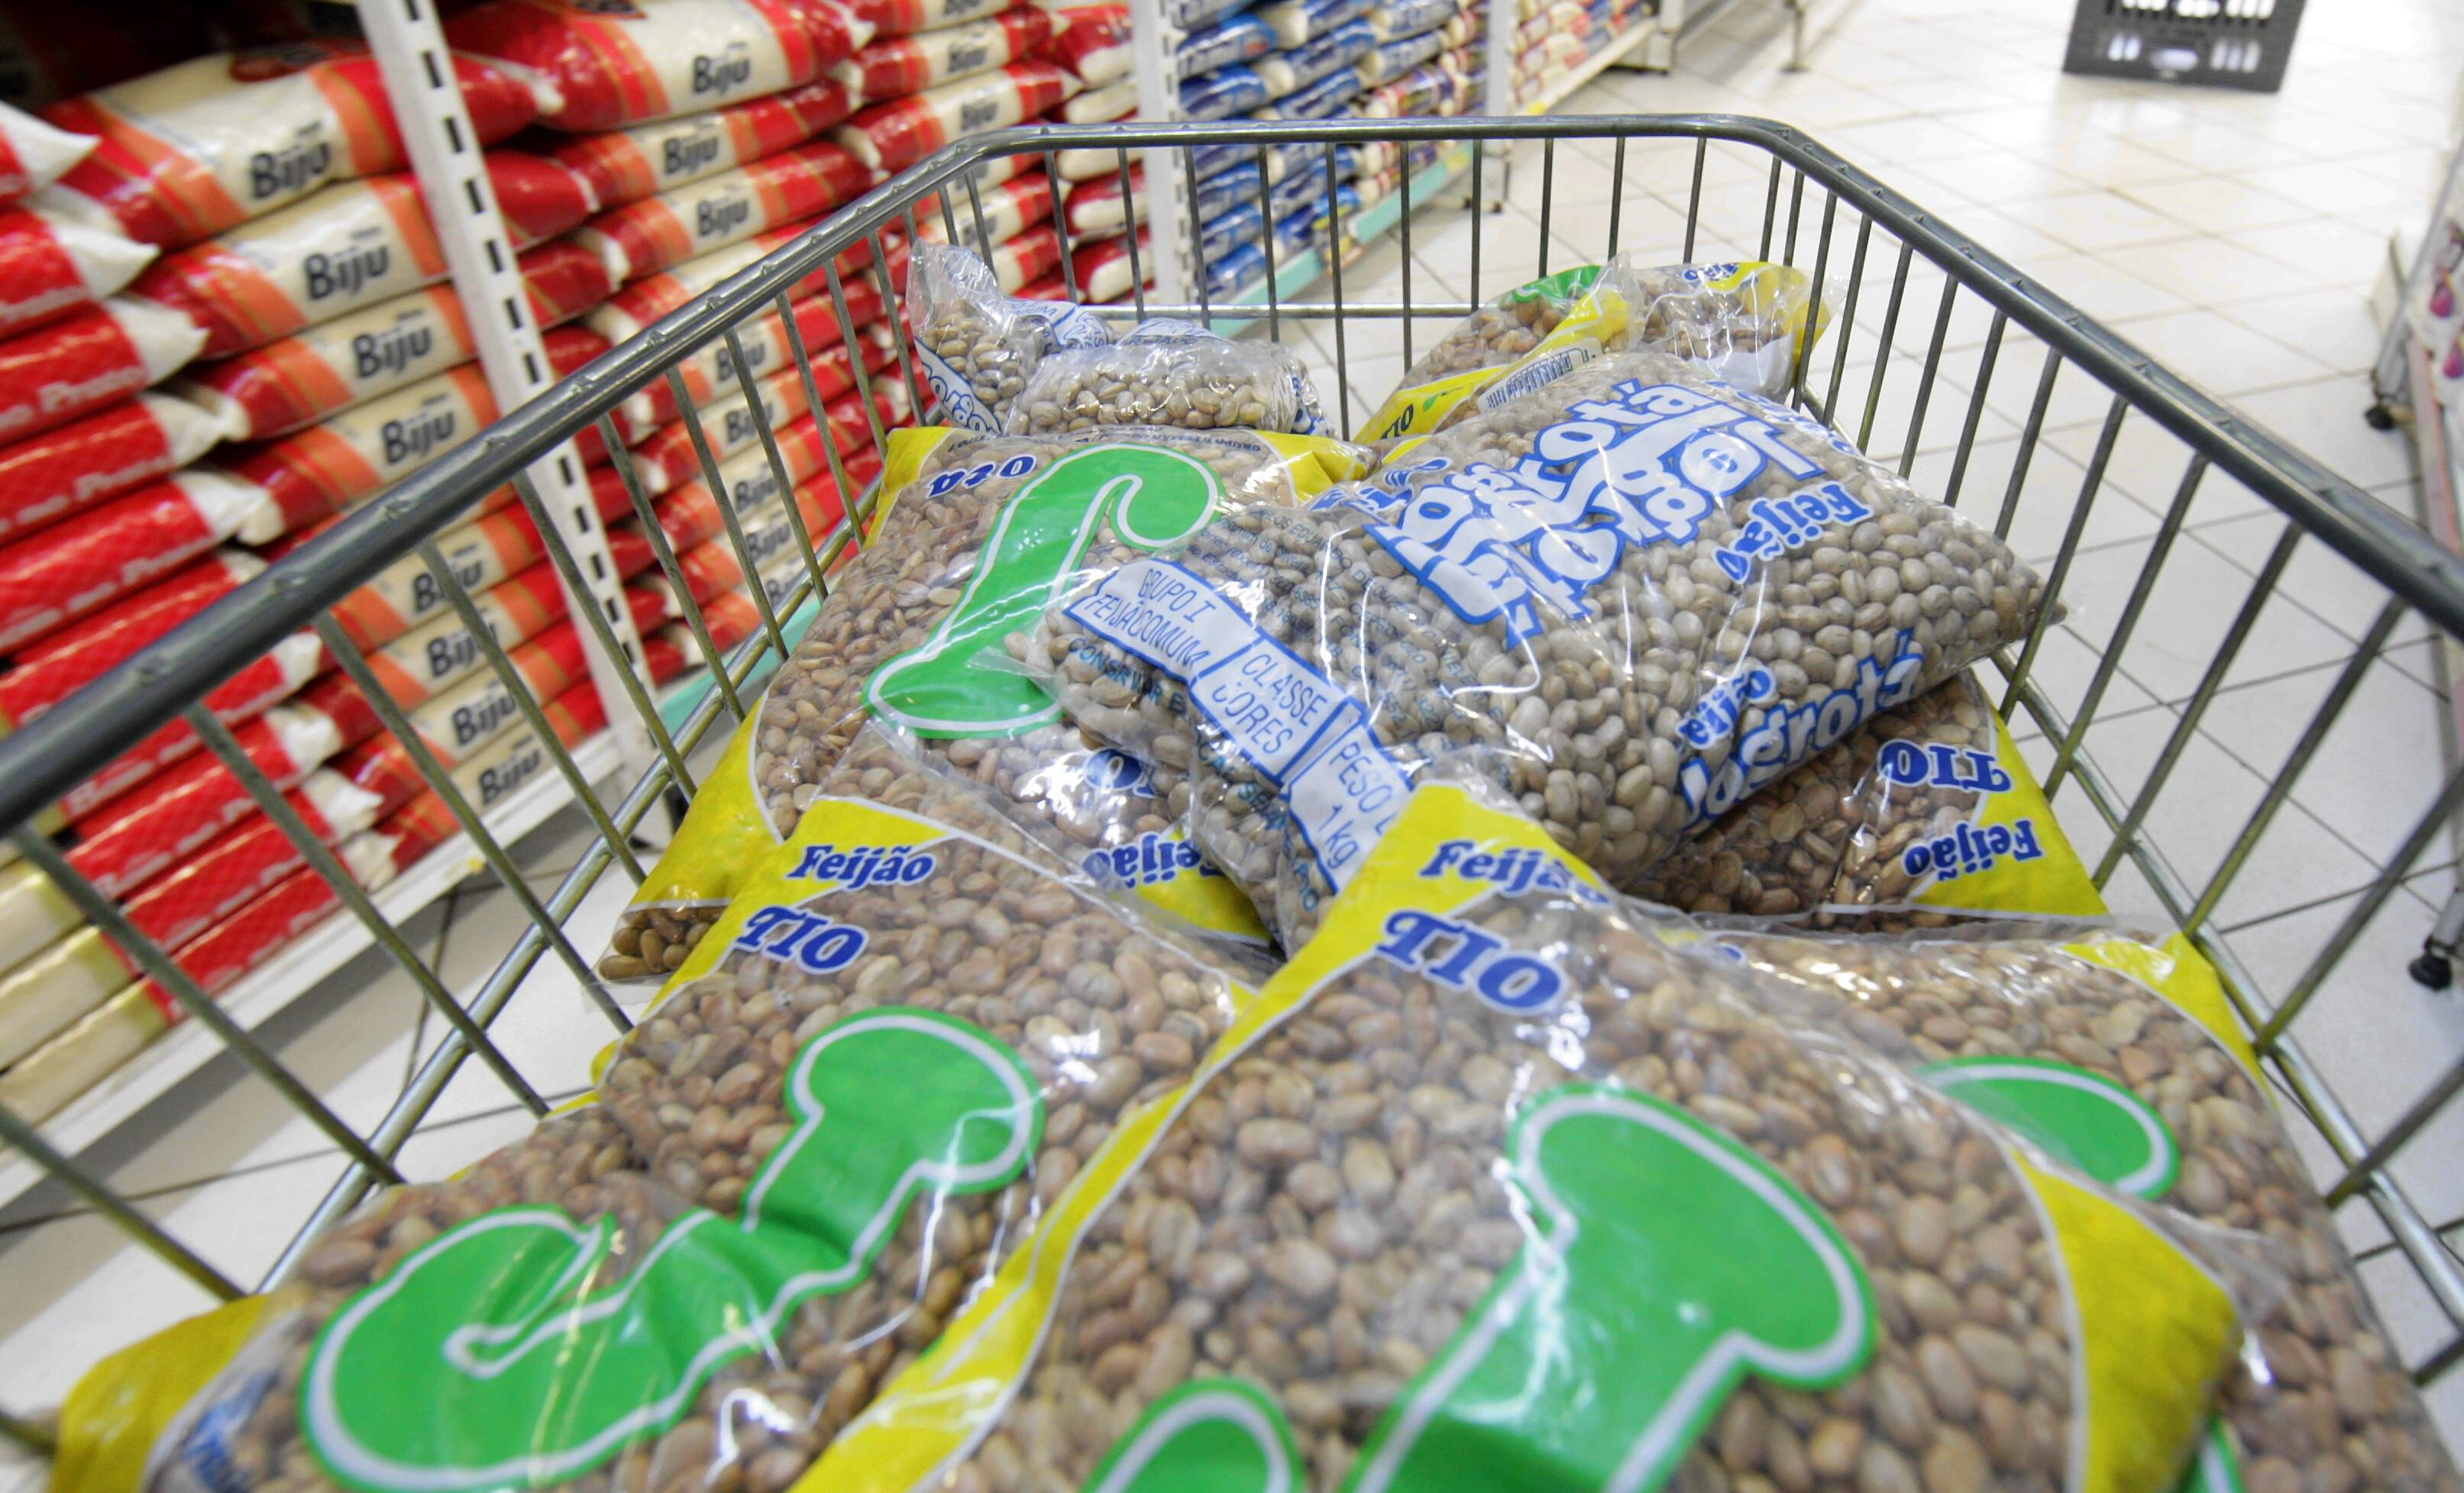 Arroz e feijão registraram elevação nos preços cobrados nos supermercados